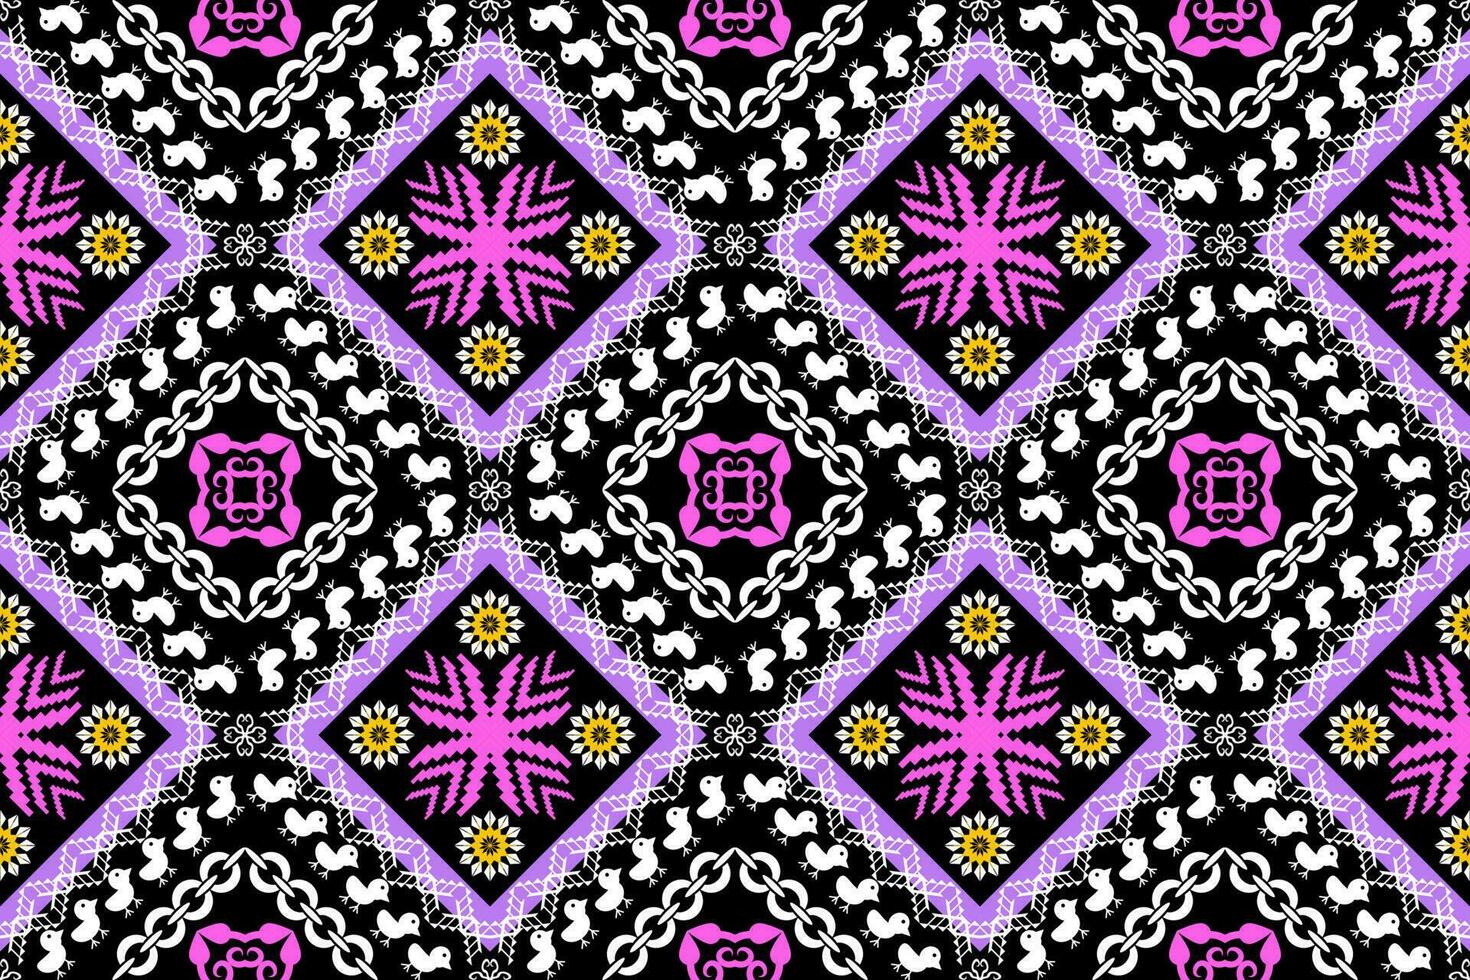 geométrico étnico oriental tradicional arte padrão.figura asteca bordado estilo.design para étnico plano de fundo,papel de parede,vestuário,embrulho,tecido,elemento,canga ilustração vetor